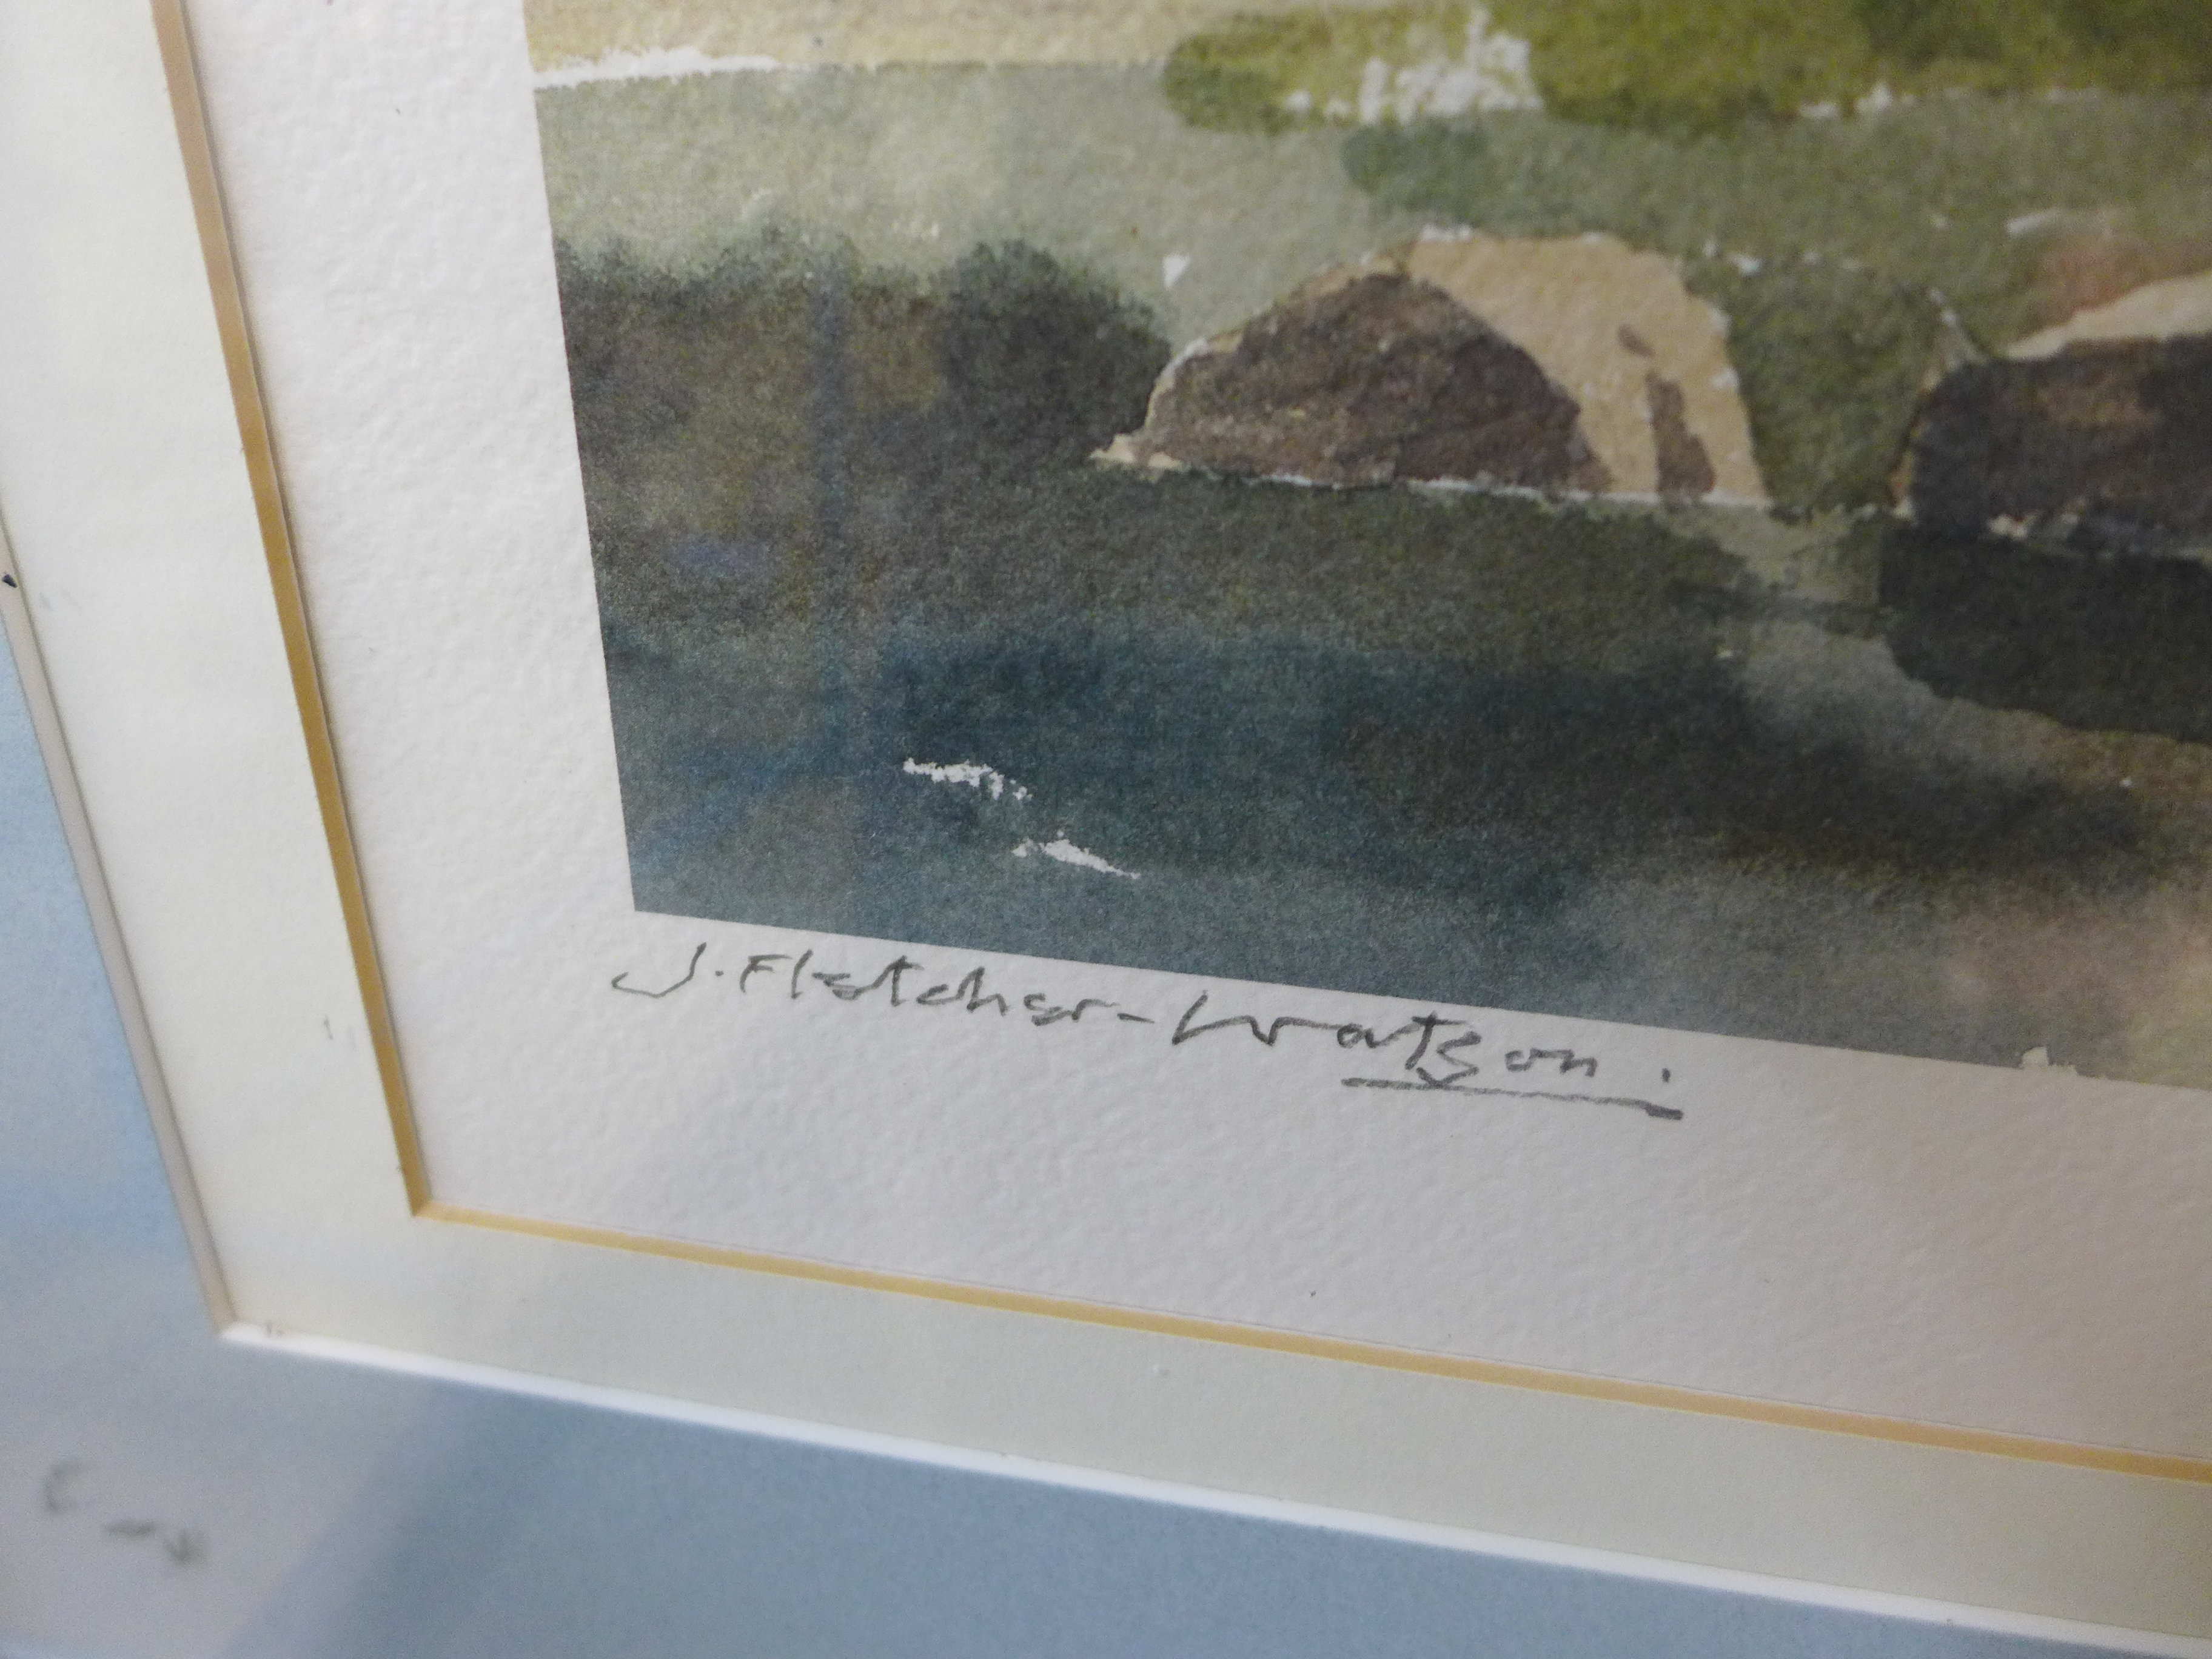 A signed J. Fletcher Watson landscape print, framed - Image 4 of 4